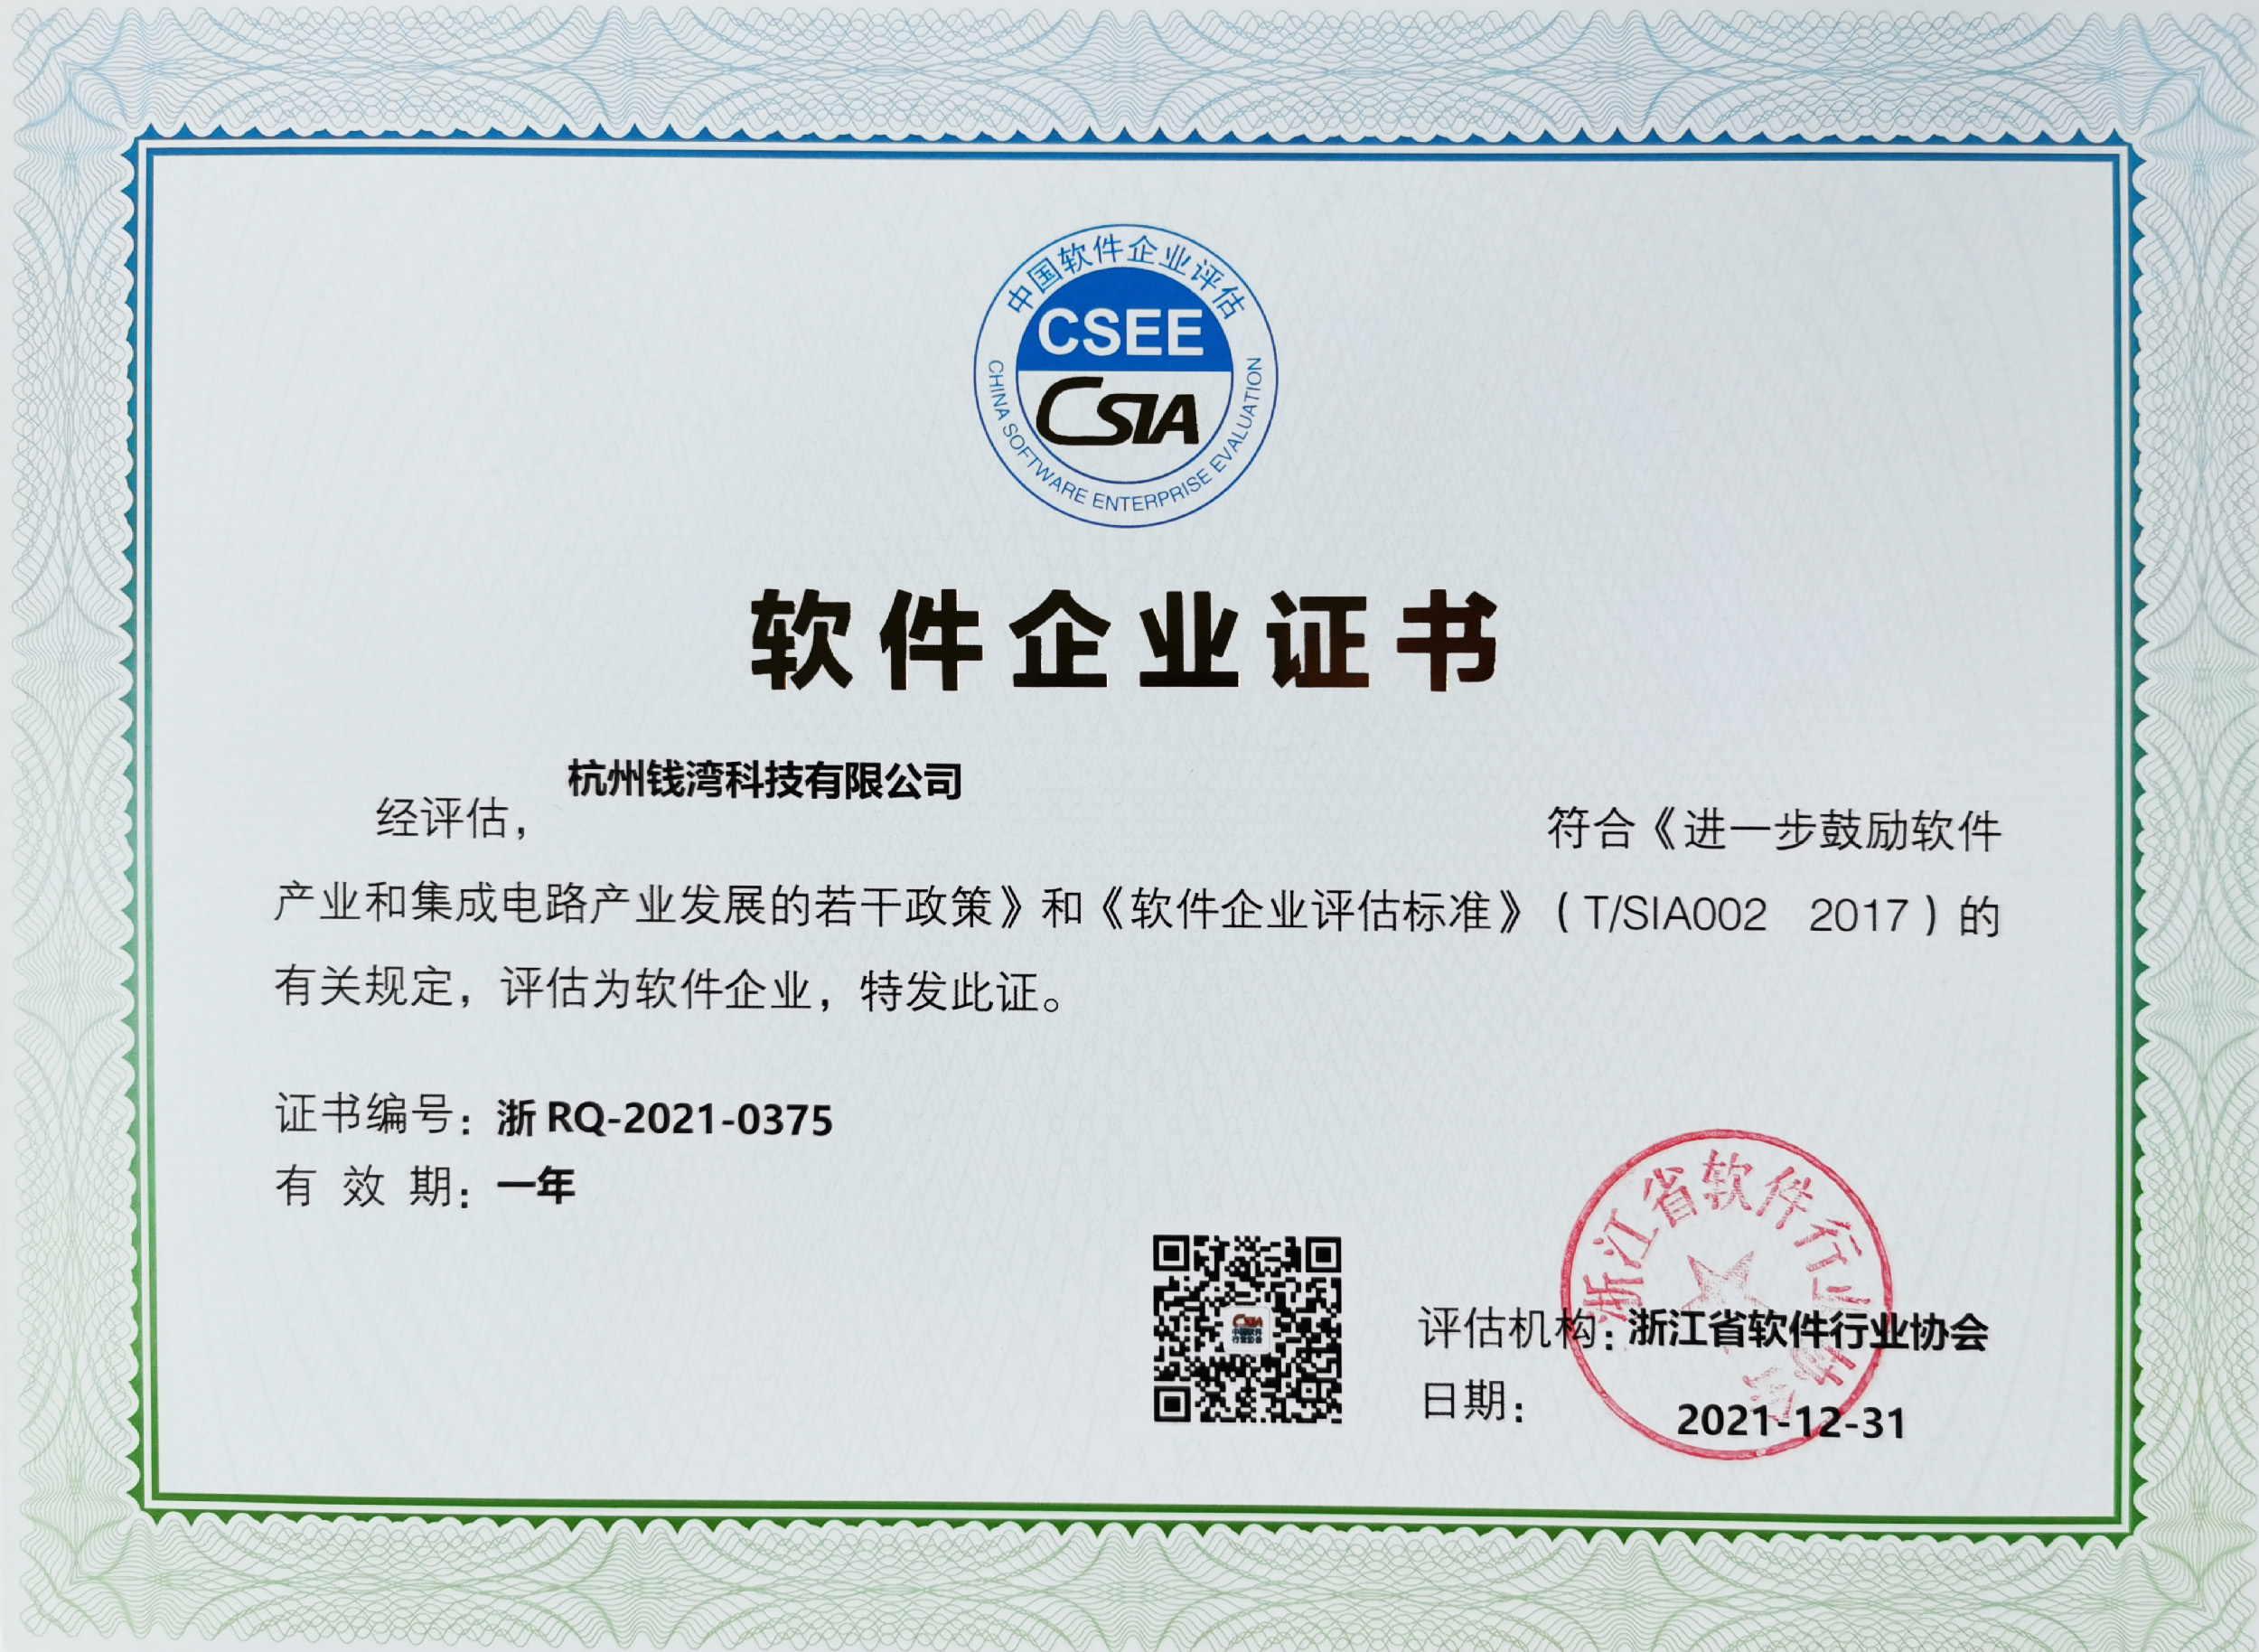 钱湾科技浙江省软件行业双软企业认证证书